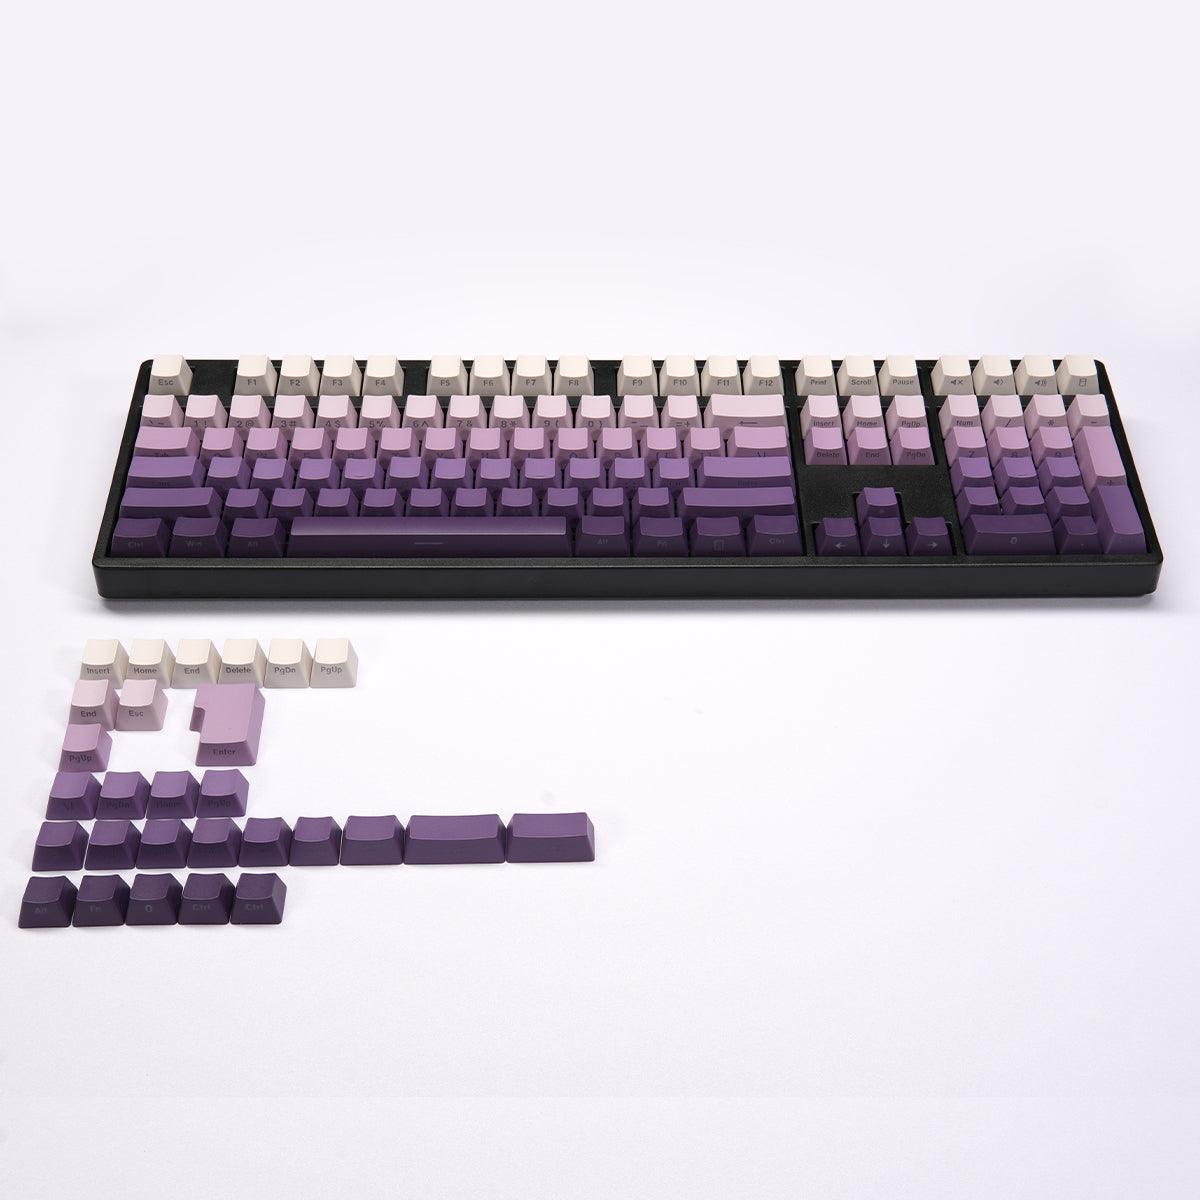 OEM Double-Shot PBT Keycap Set - Lavender Purple Gradient - KeyCapUS